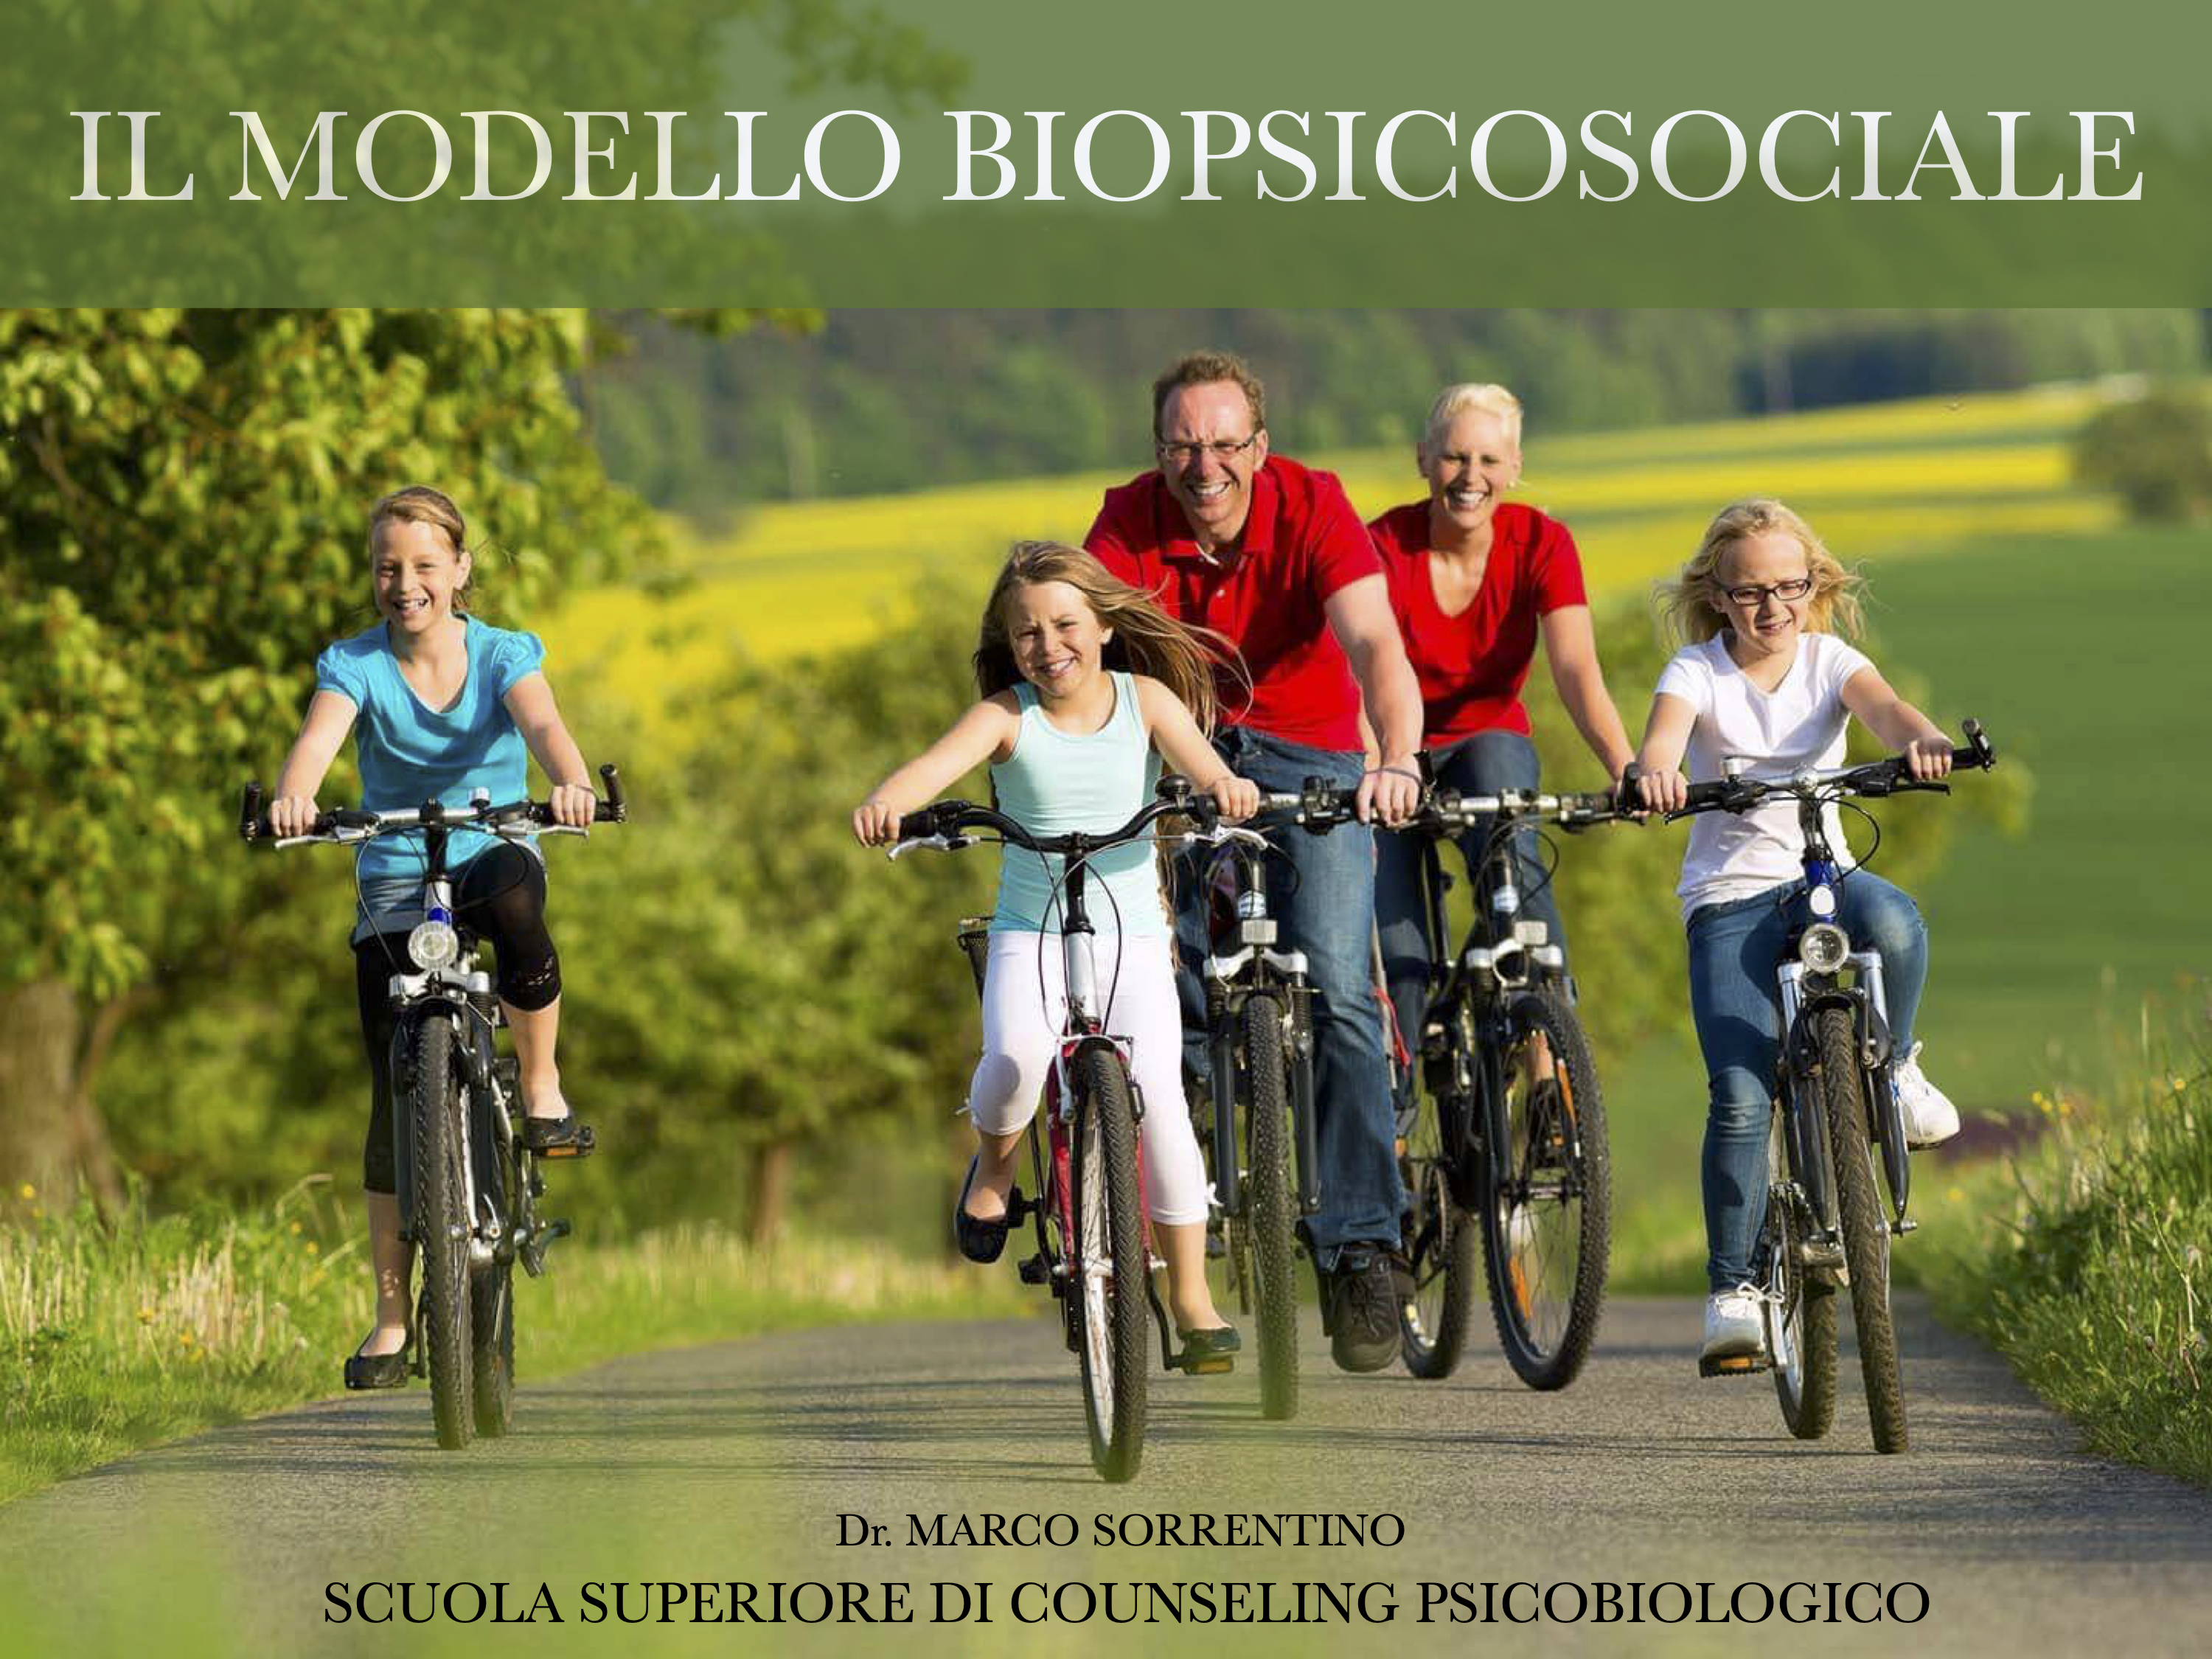 biopsicosociale